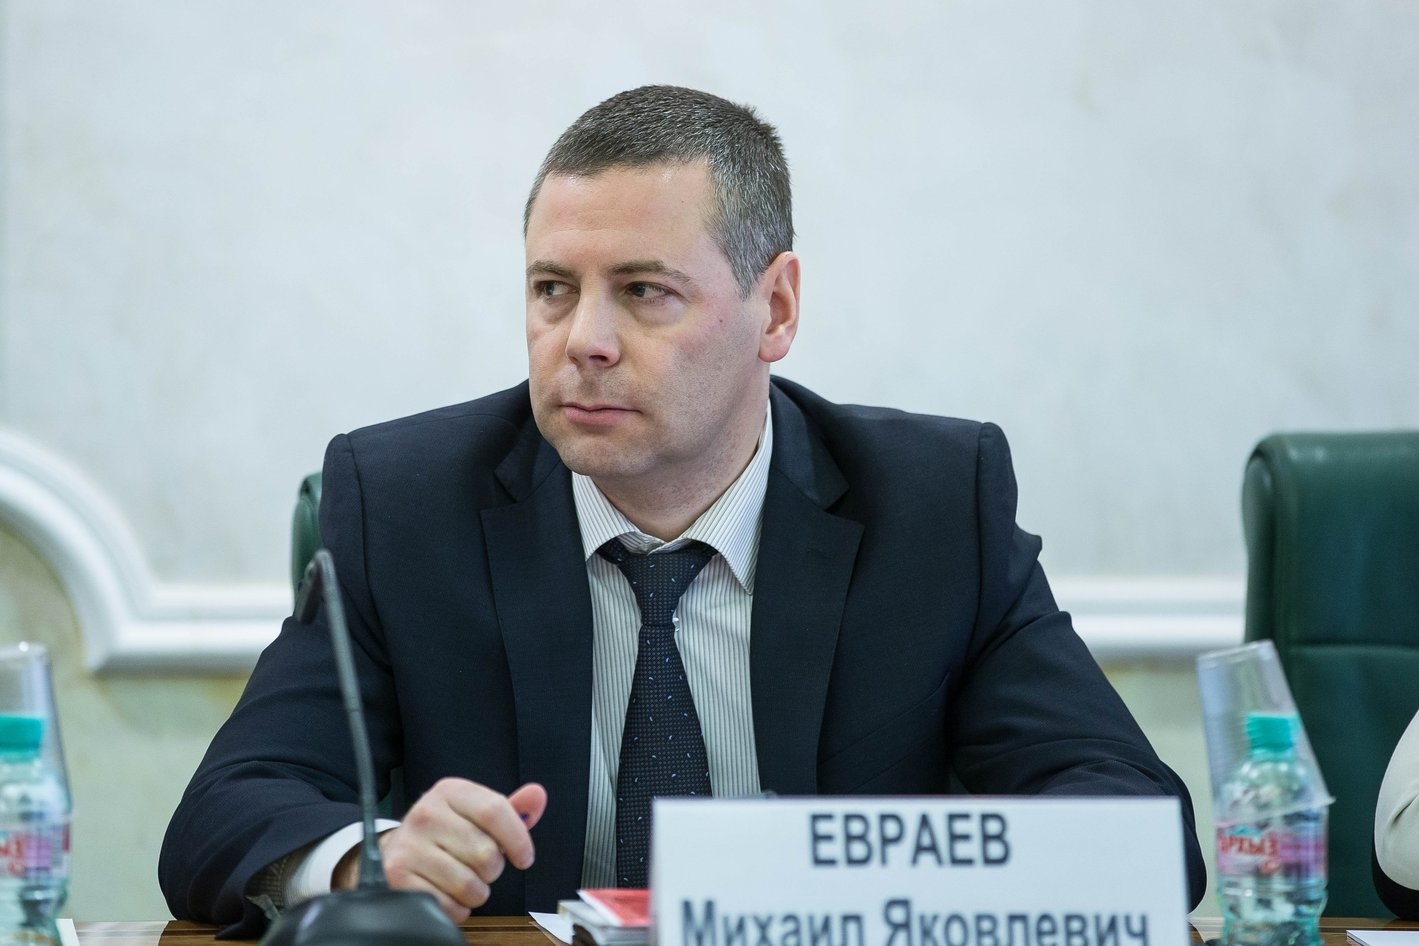 Михаил Евраев обсудил с руководителями территориальных органов ФАС России в формате ВКС принятые меры в сфере закупок в связи с пандемией COVID-19